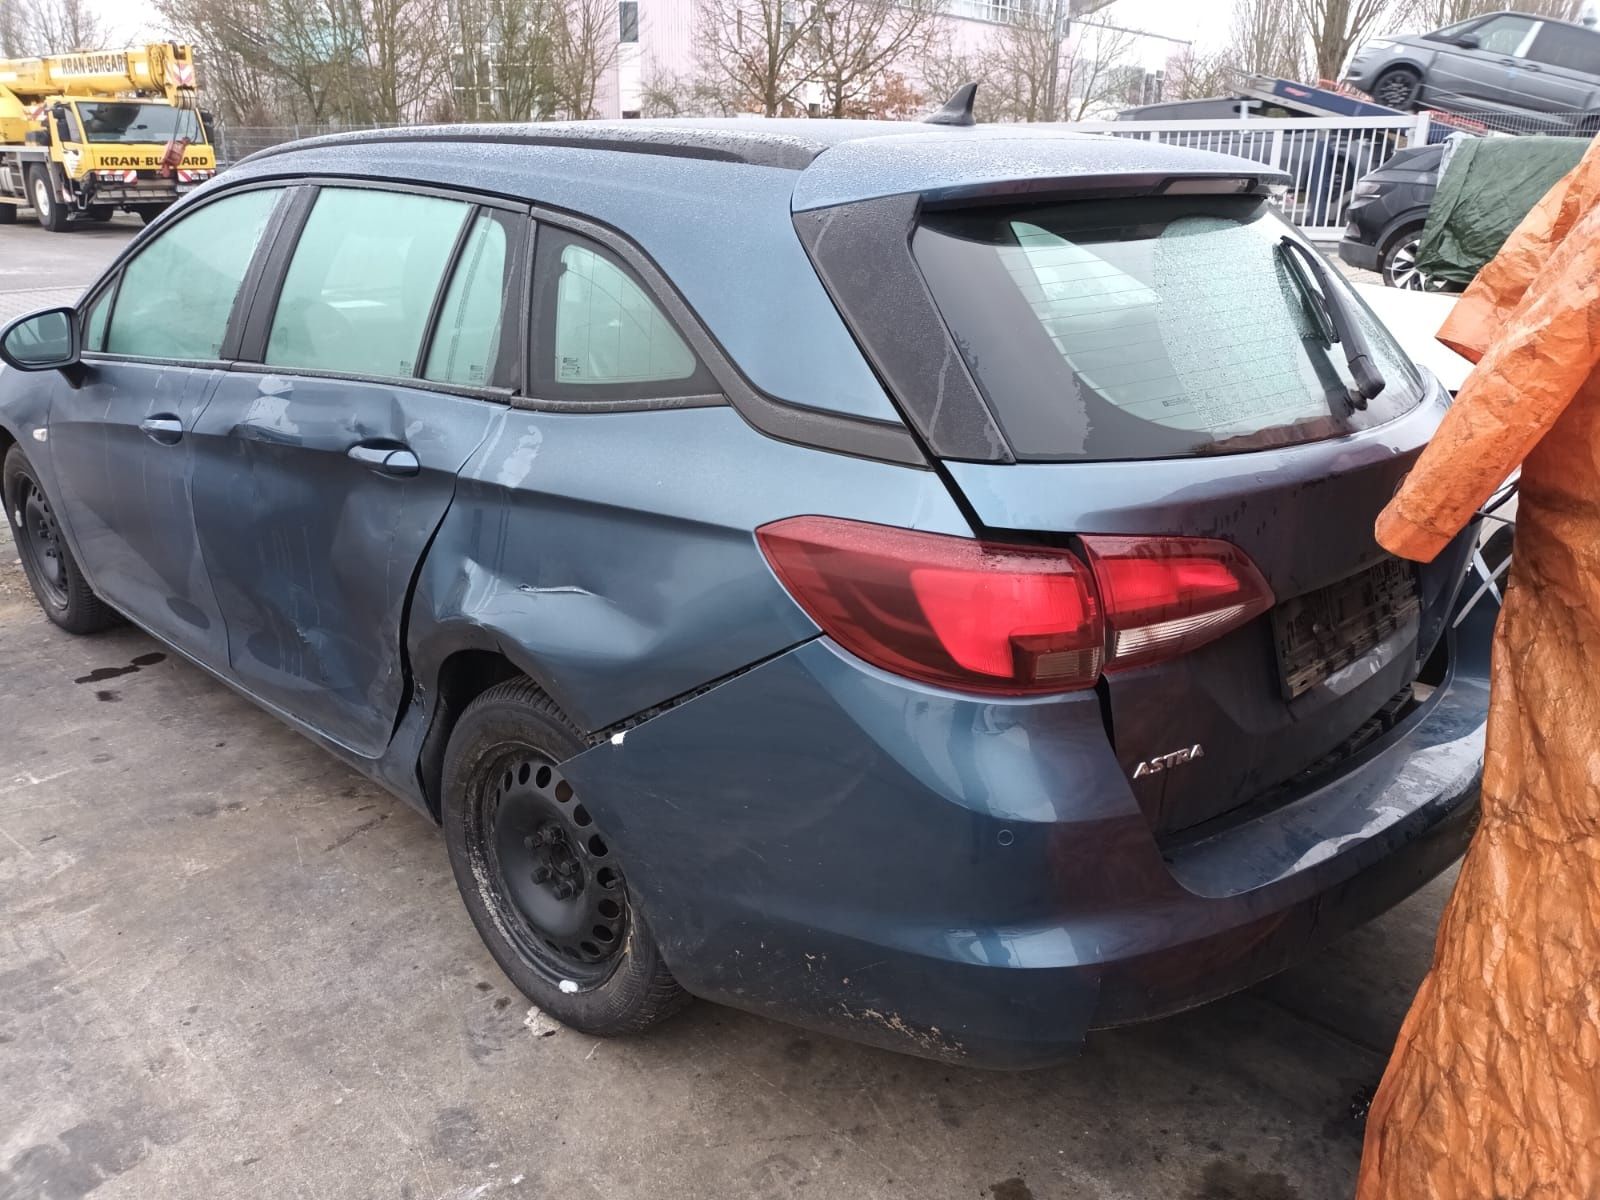 Opel Astra, bogata wersja - uszkodzona